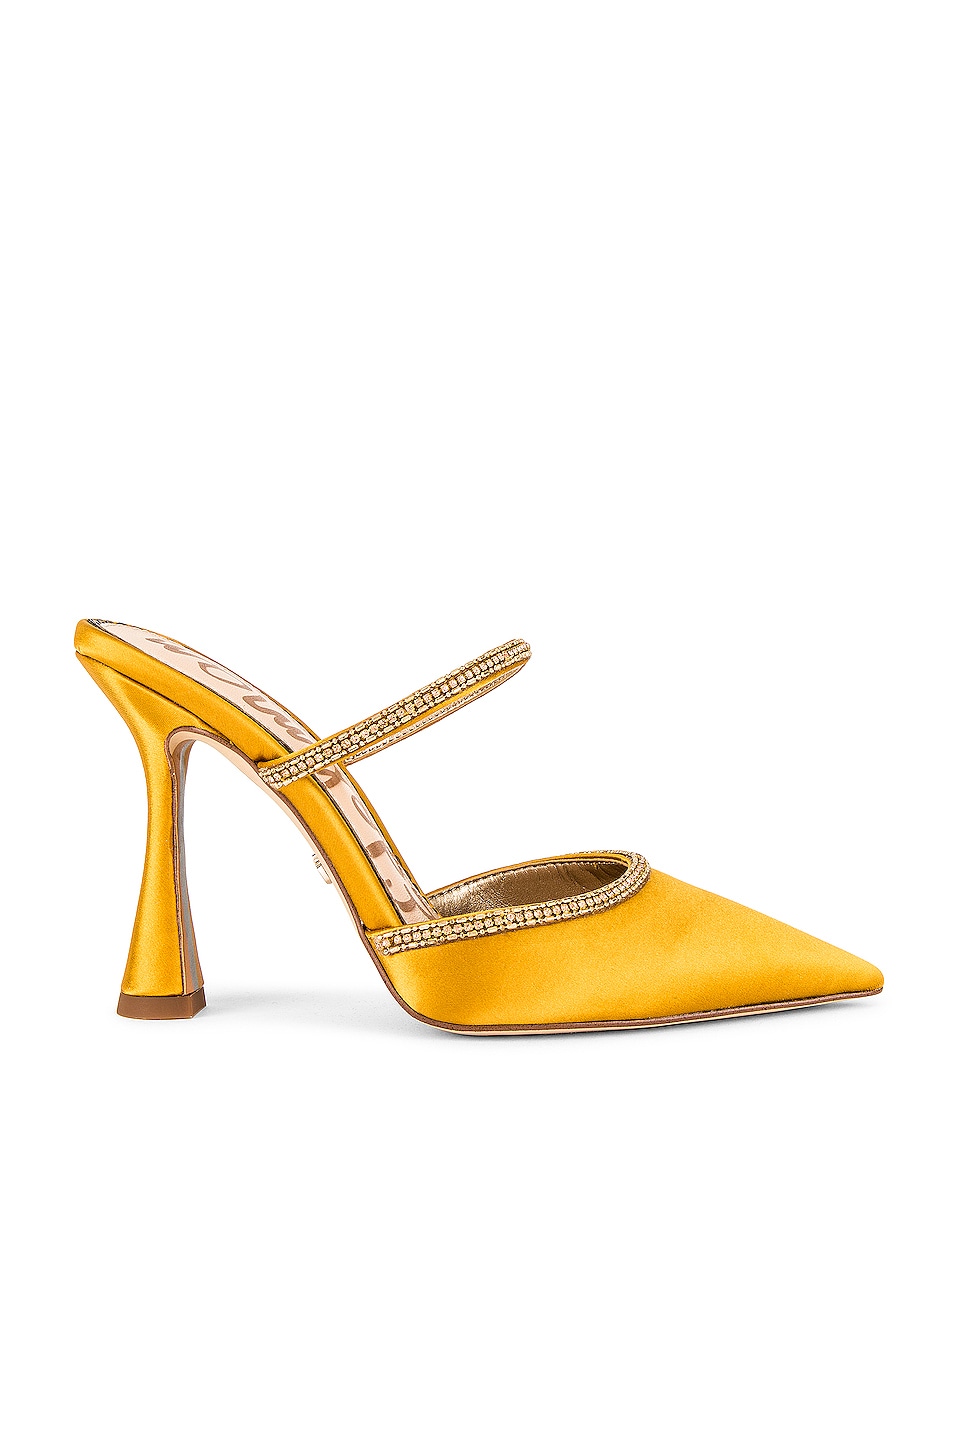 Buy > sam edelman mules heels > in stock